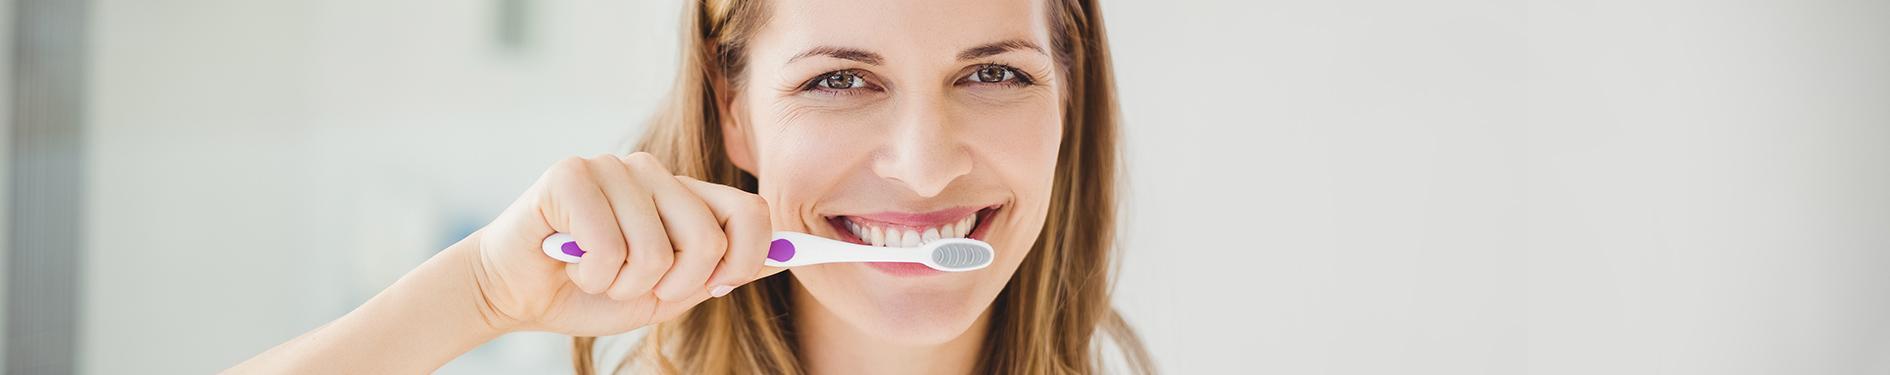 Uśmiechnięta kobieta myjąca zęby